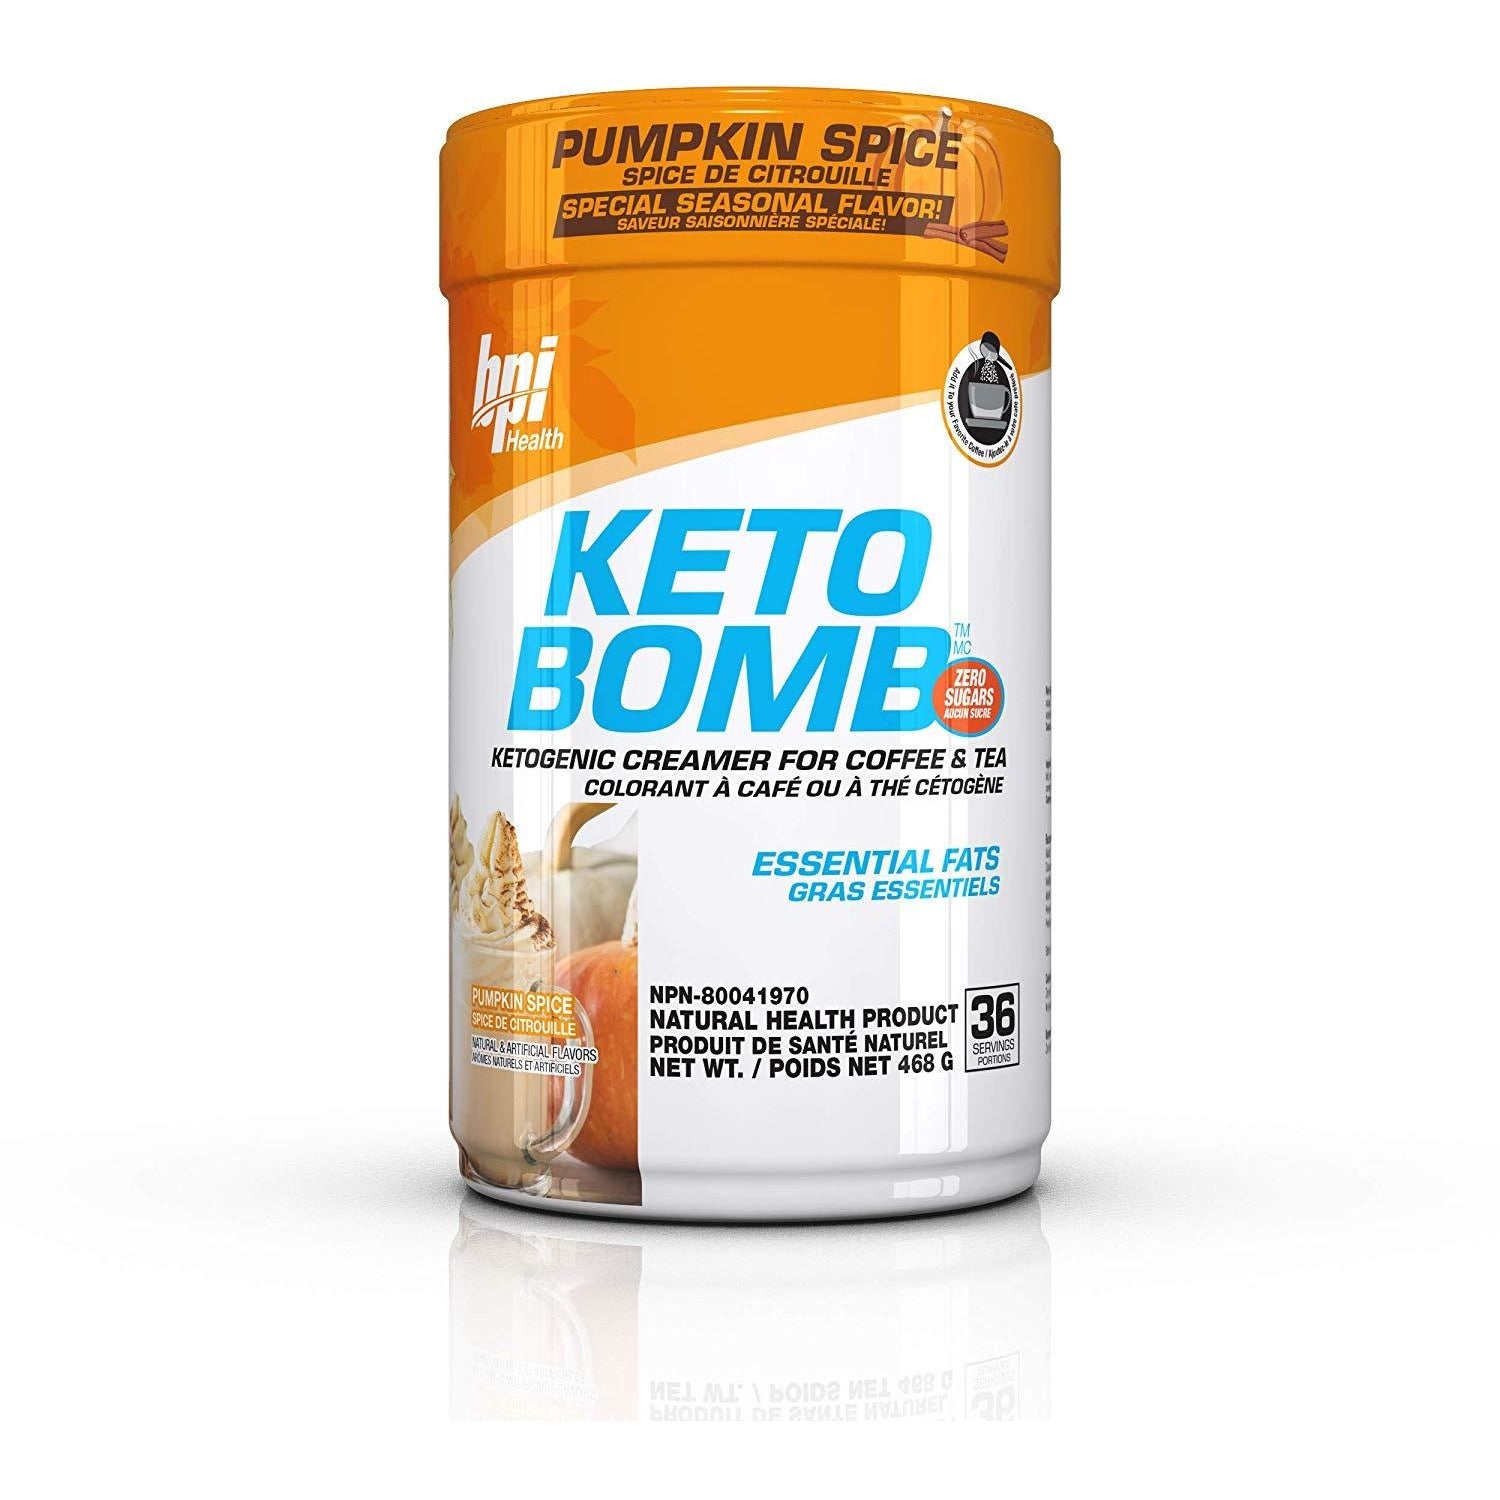 BPI Keto Bomb - Ketogenic MCT Creamer for Coffee and Tea bpi-keto-bomb-1 KETO Supplements Pumpkin Spice BPI